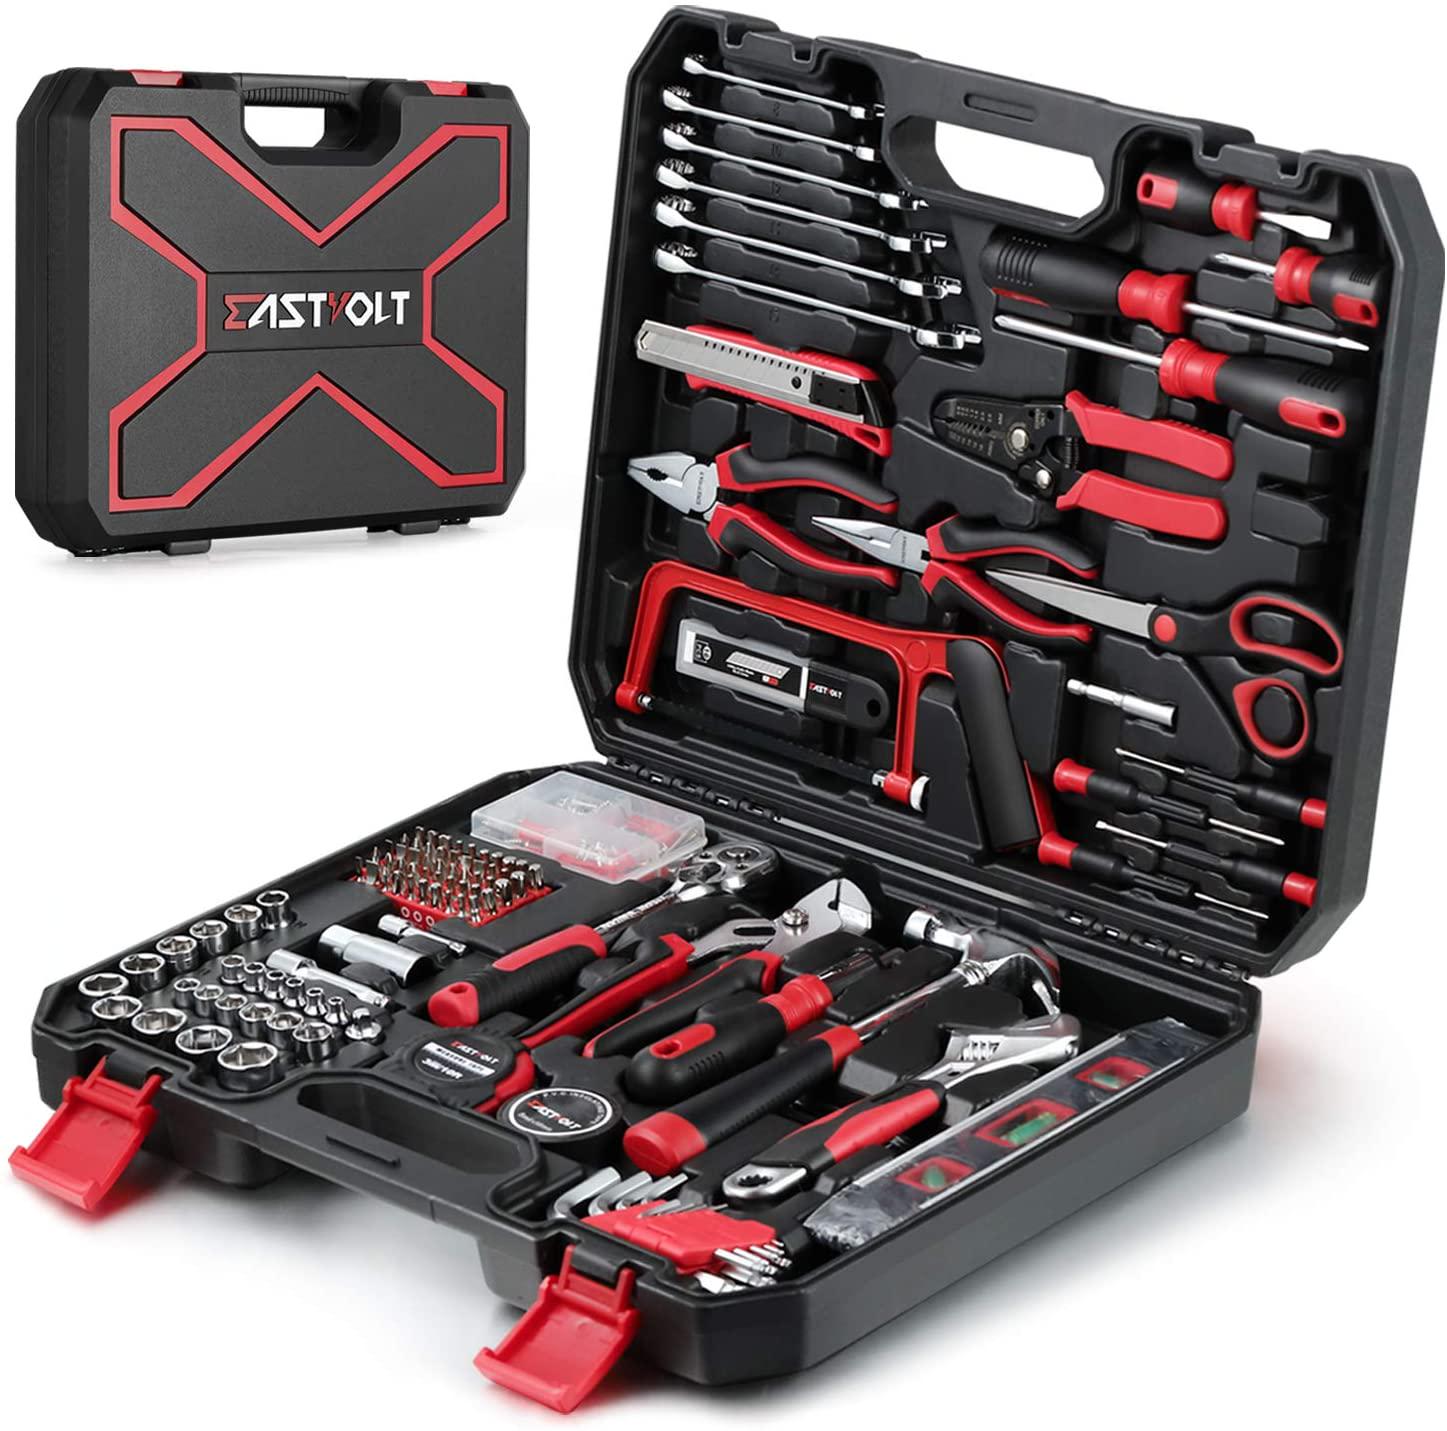 Eastvolt 218 Piece Household Tool Kit Auto Repair Tool Set Tool Kits